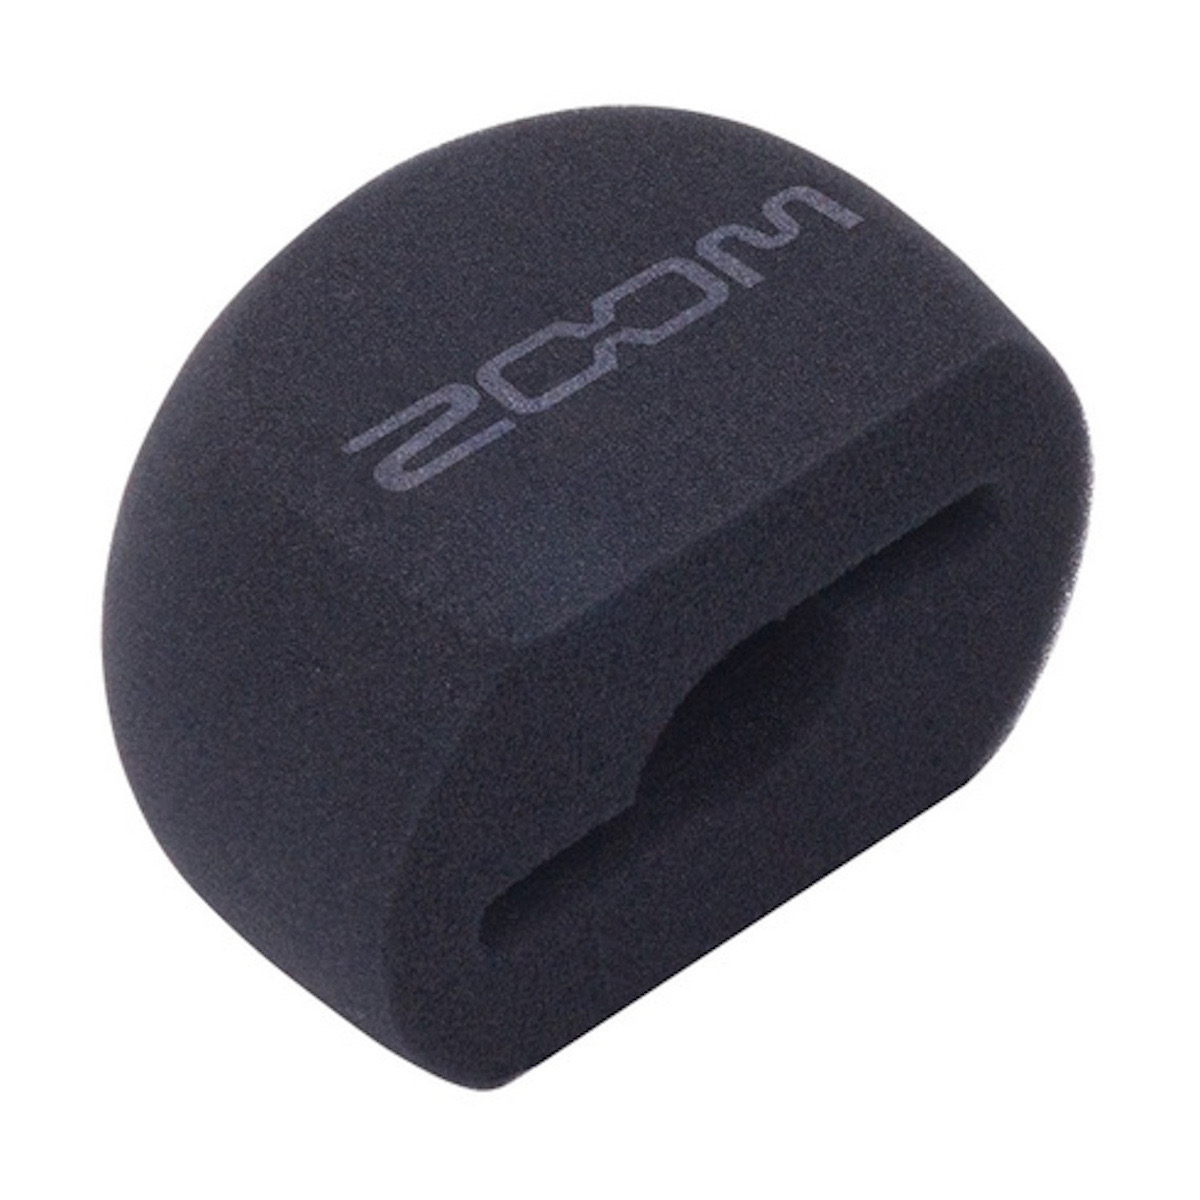 Zoom WSH 6 Windschutz für XY Mikrofon